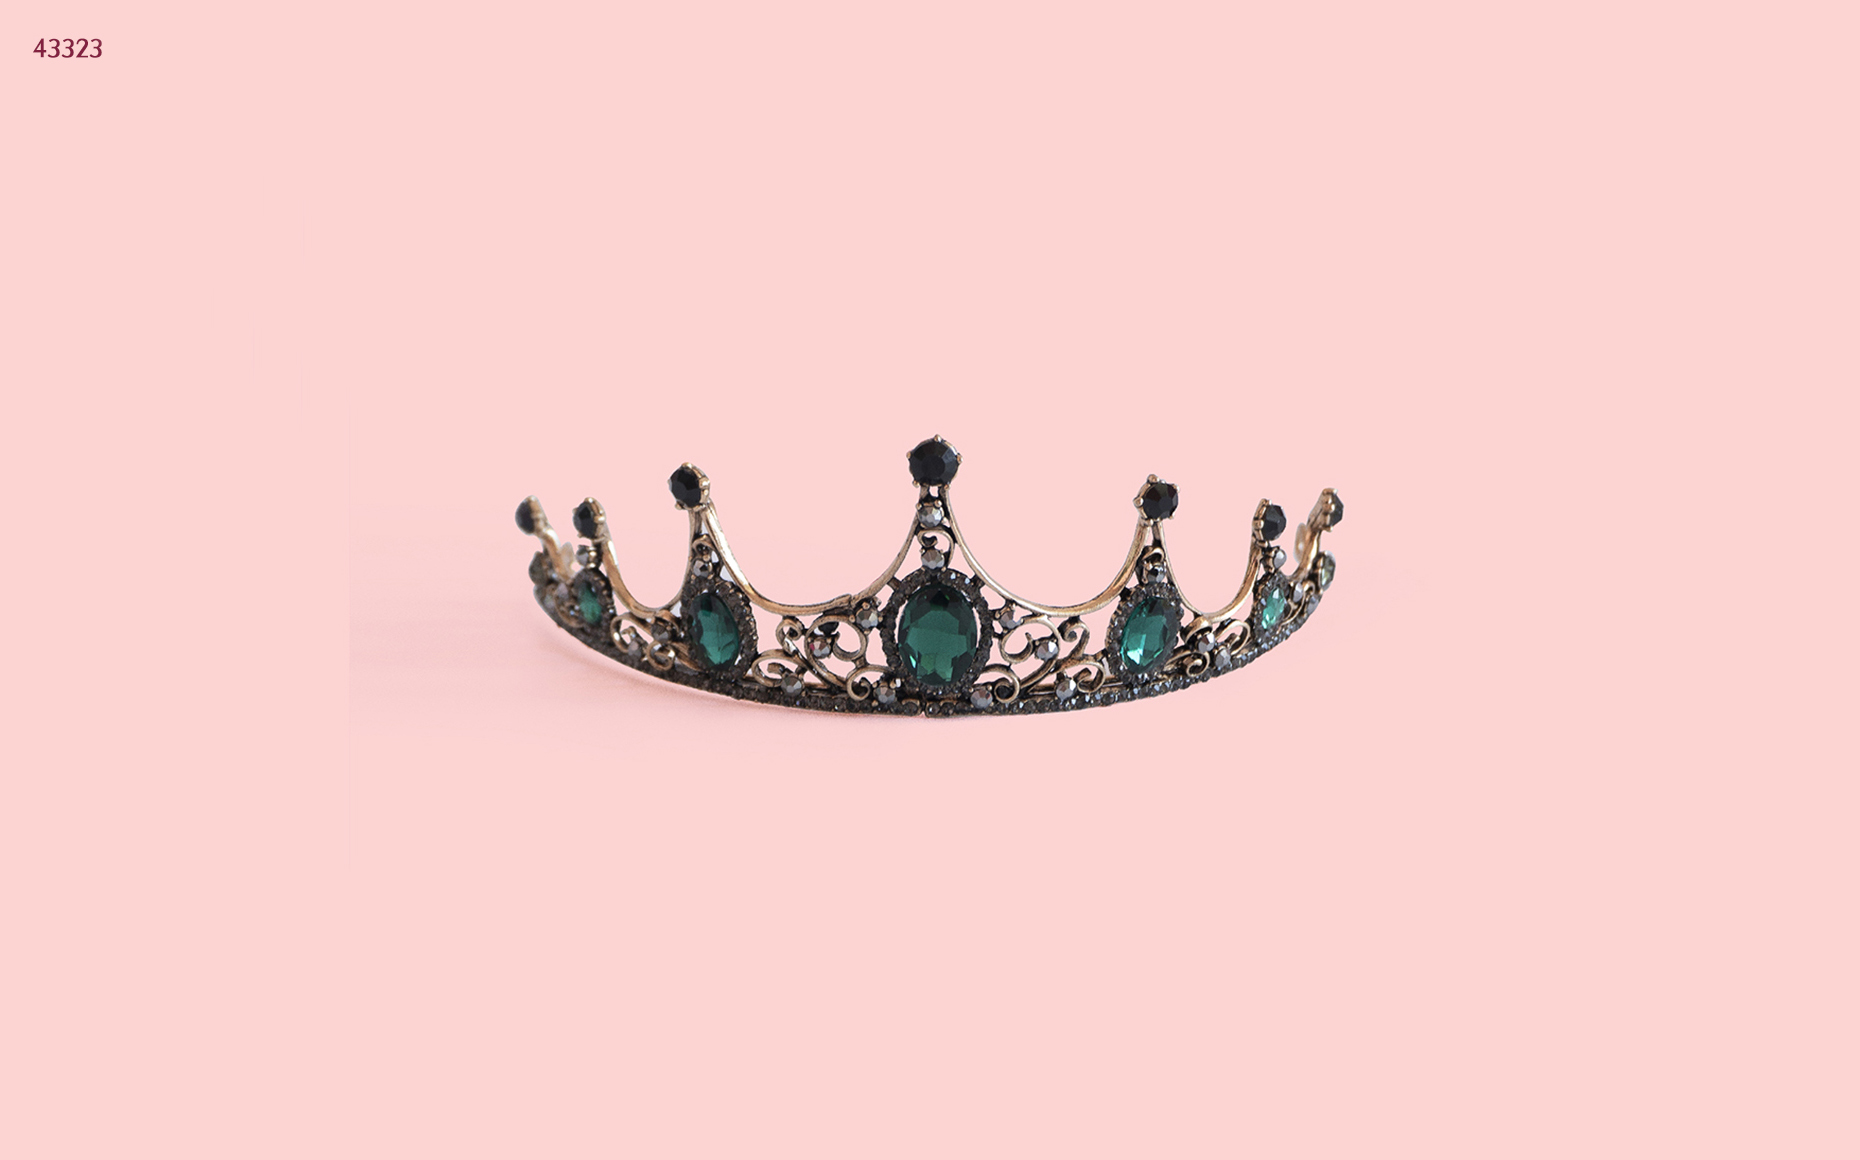 The Sophia Crown